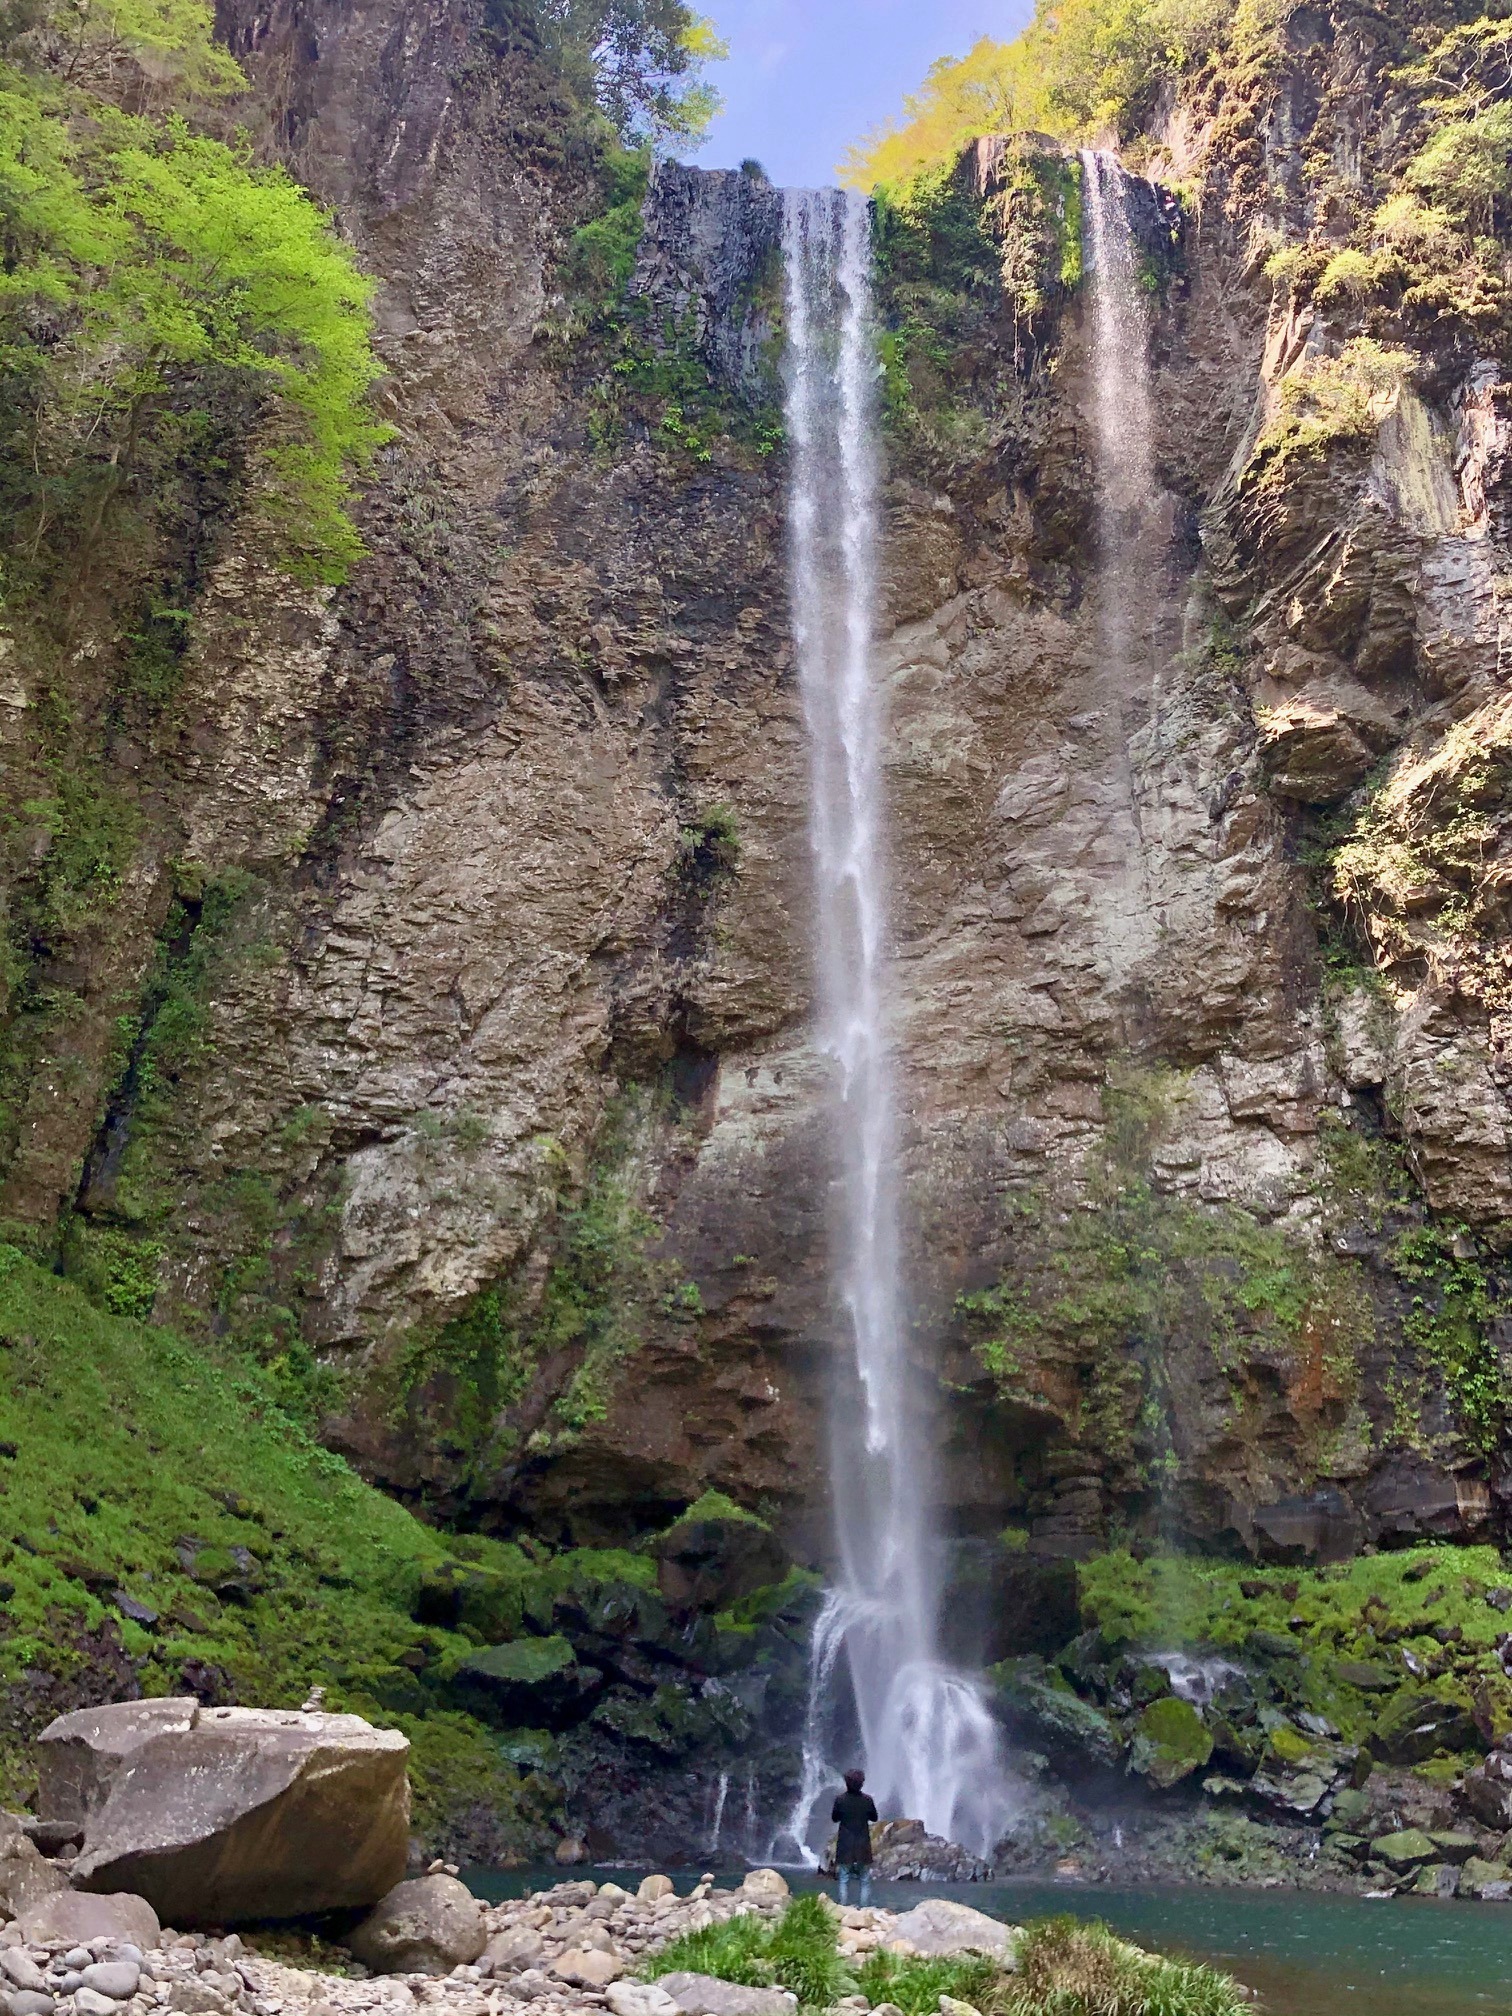 近所にある国指定名勝の福貴野の滝